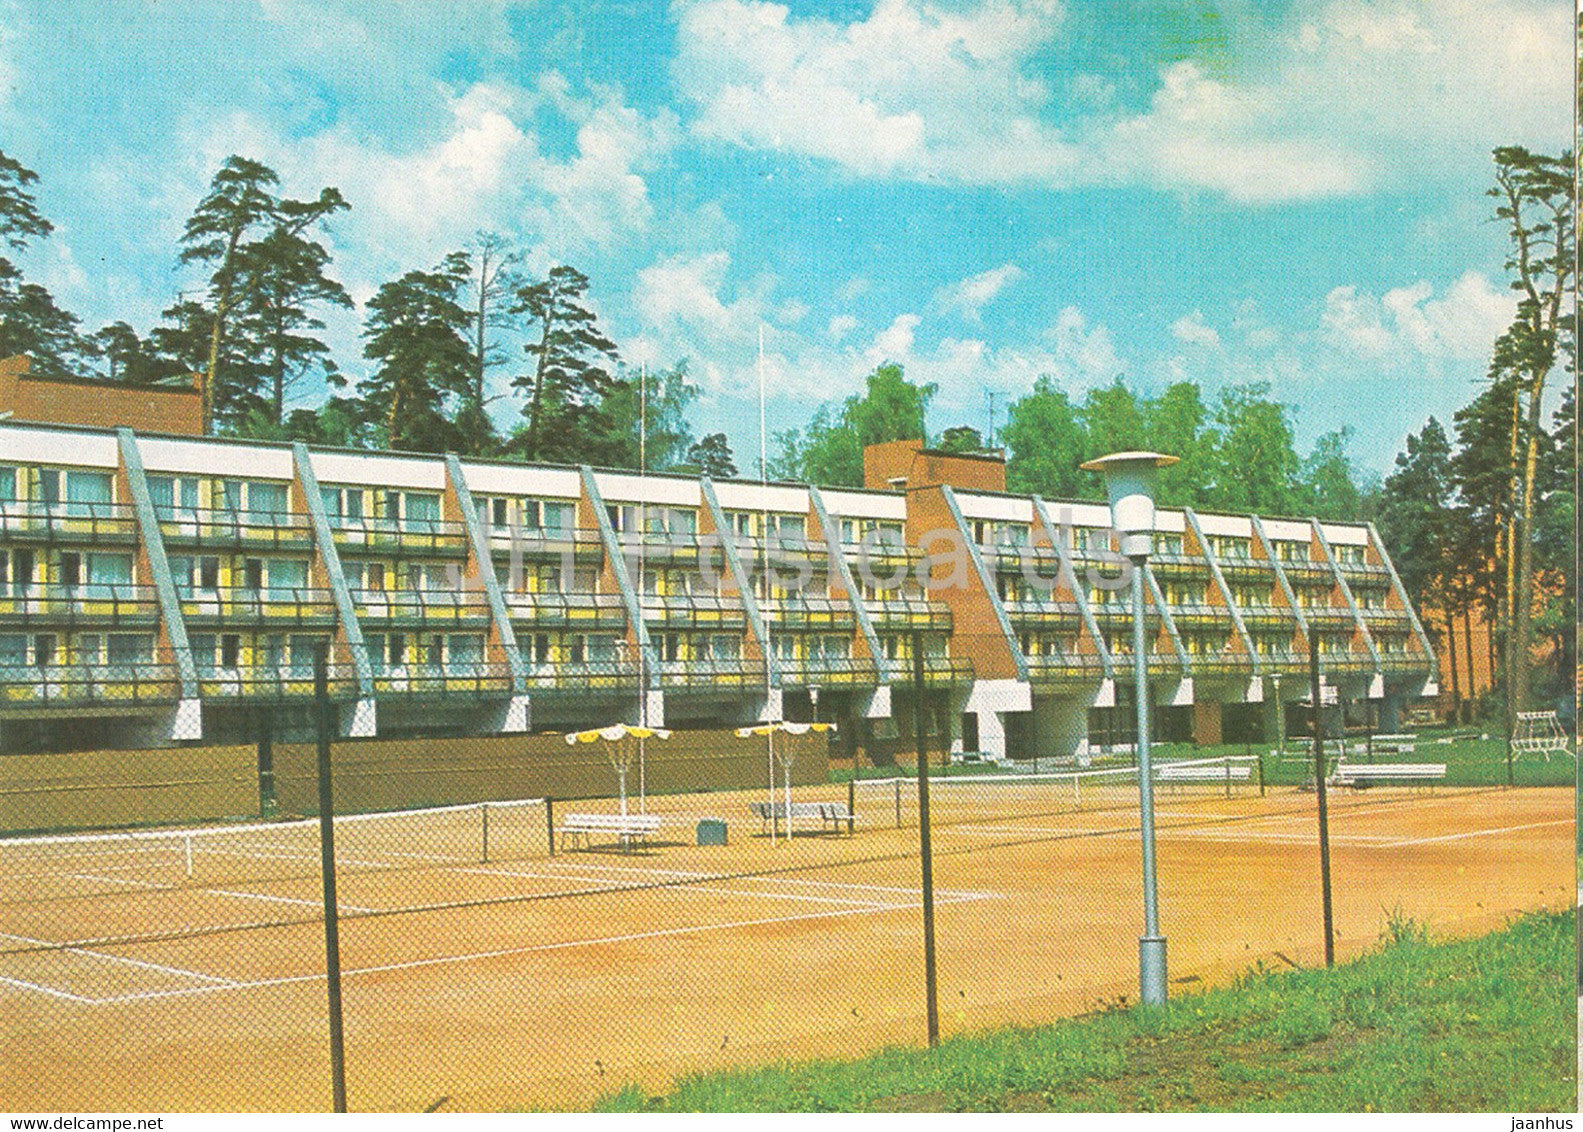 Jurmala - Tennis Court at Lielupe - sport - 1986 - Latvia USSR - unused - JH Postcards